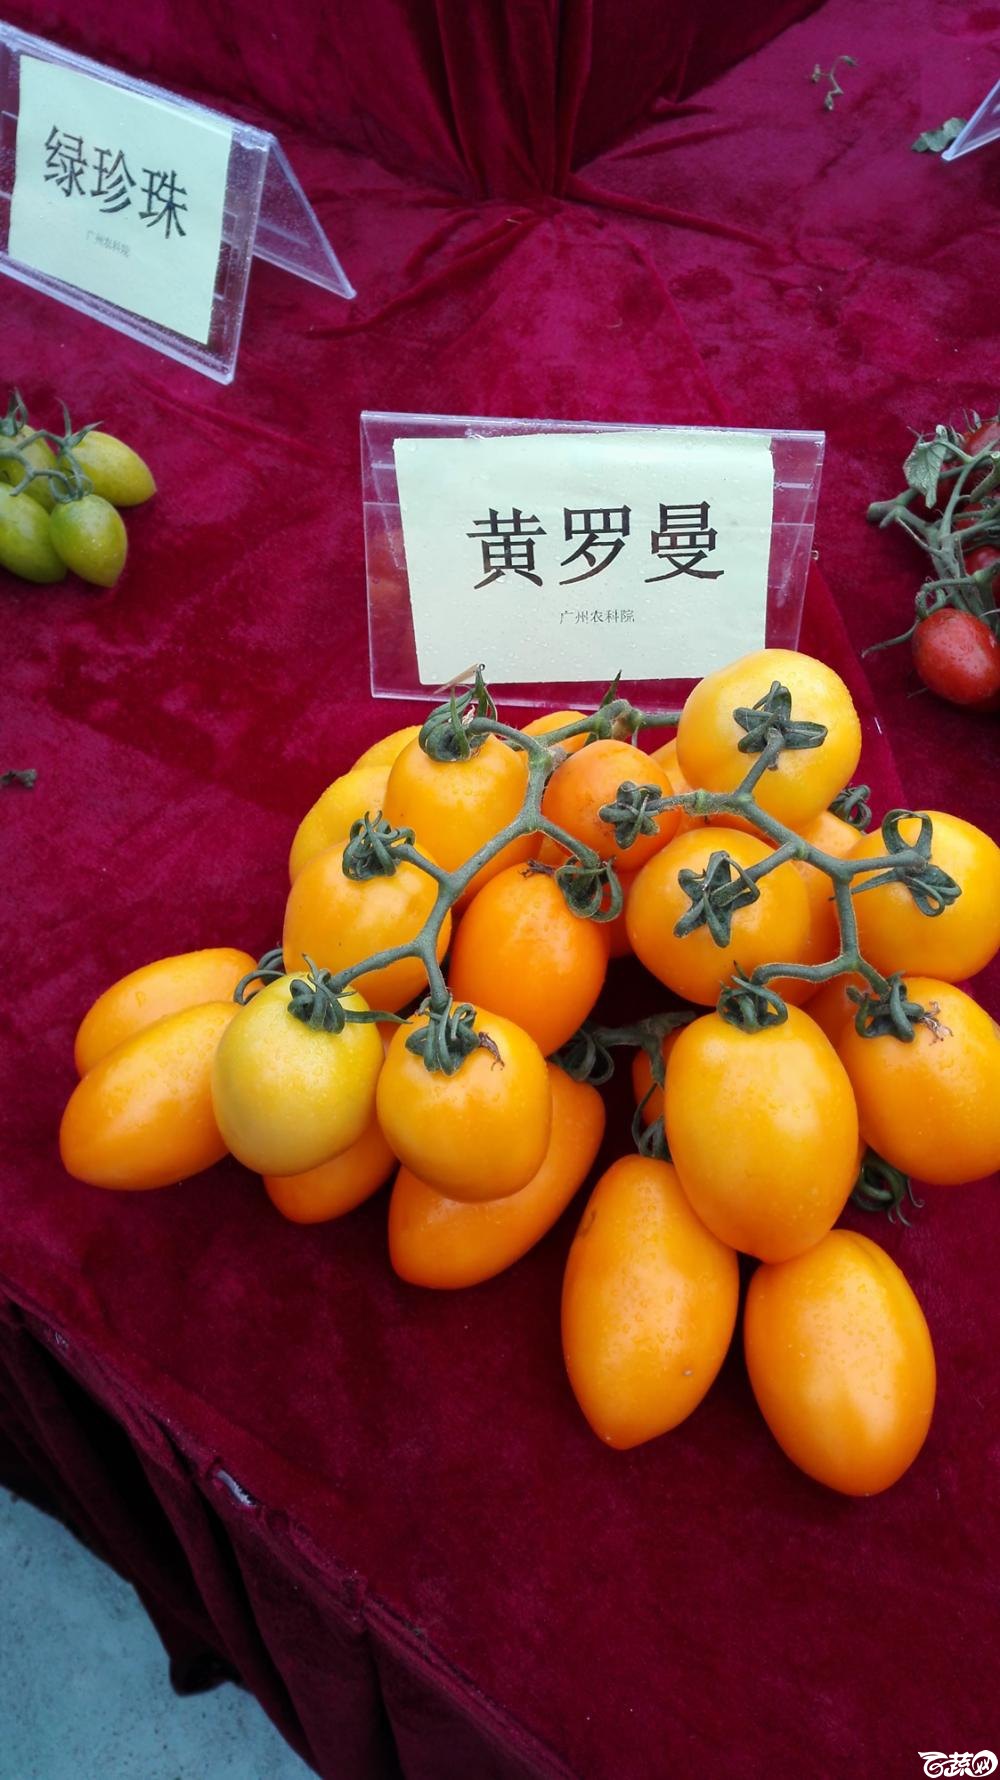 2014年12月8号中山蔬菜新品种展示会_番茄_008.jpg